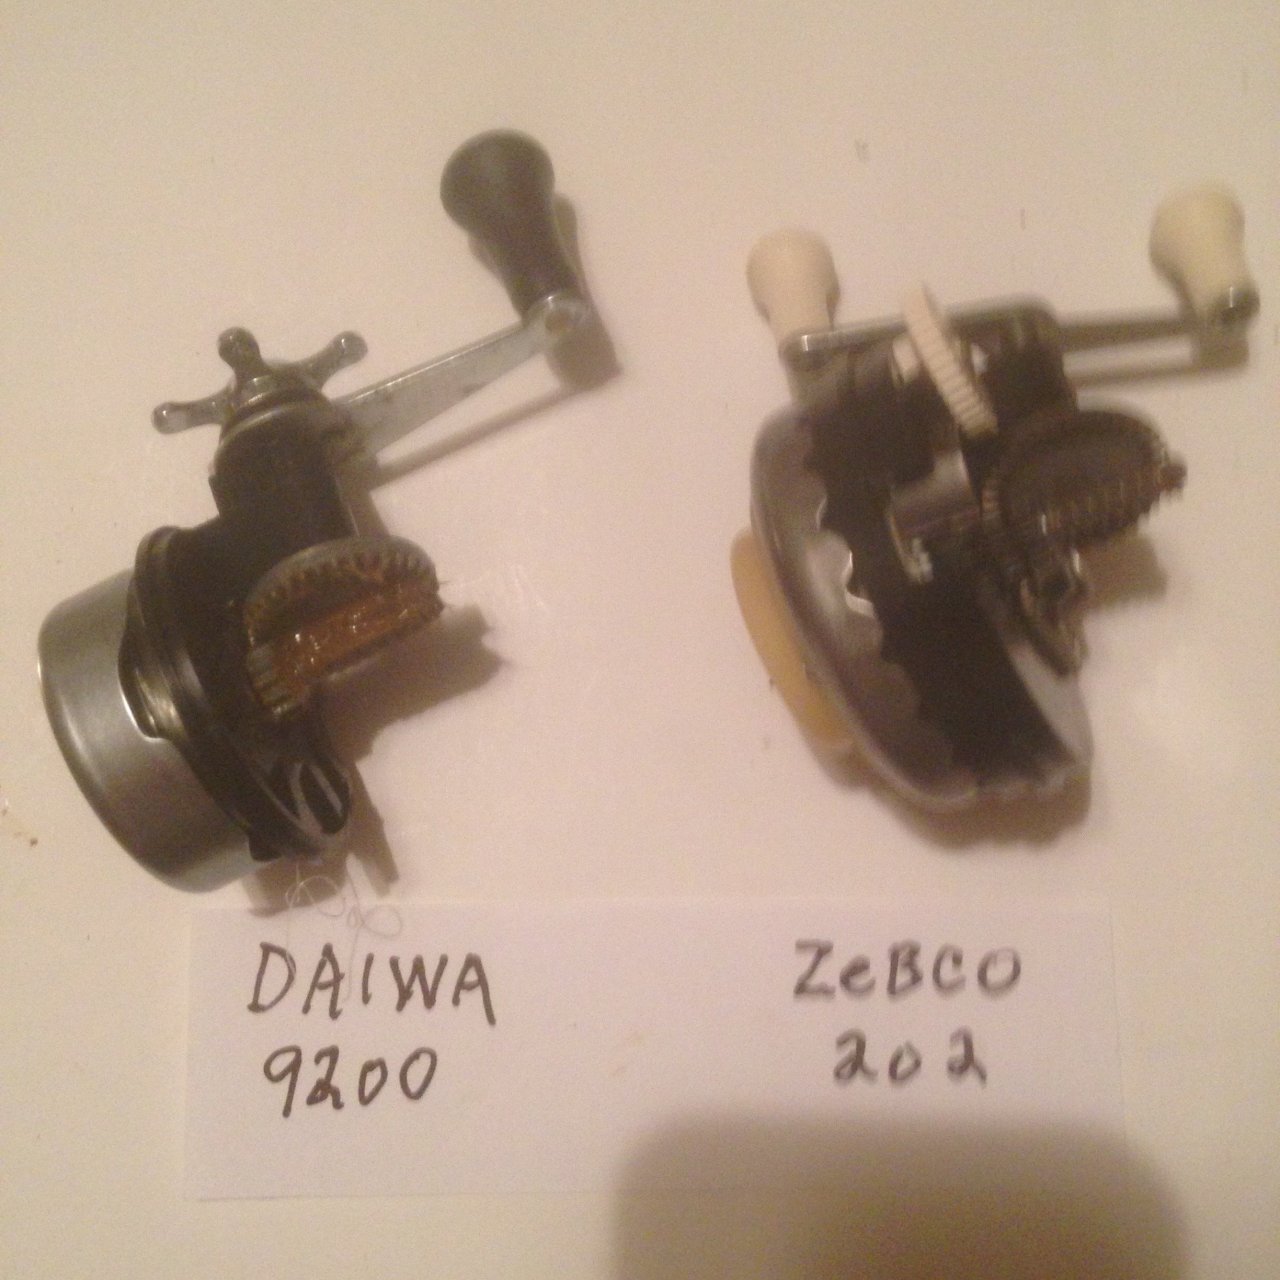 Vintage Daiwa And Zebco Spincast Reel Comparison